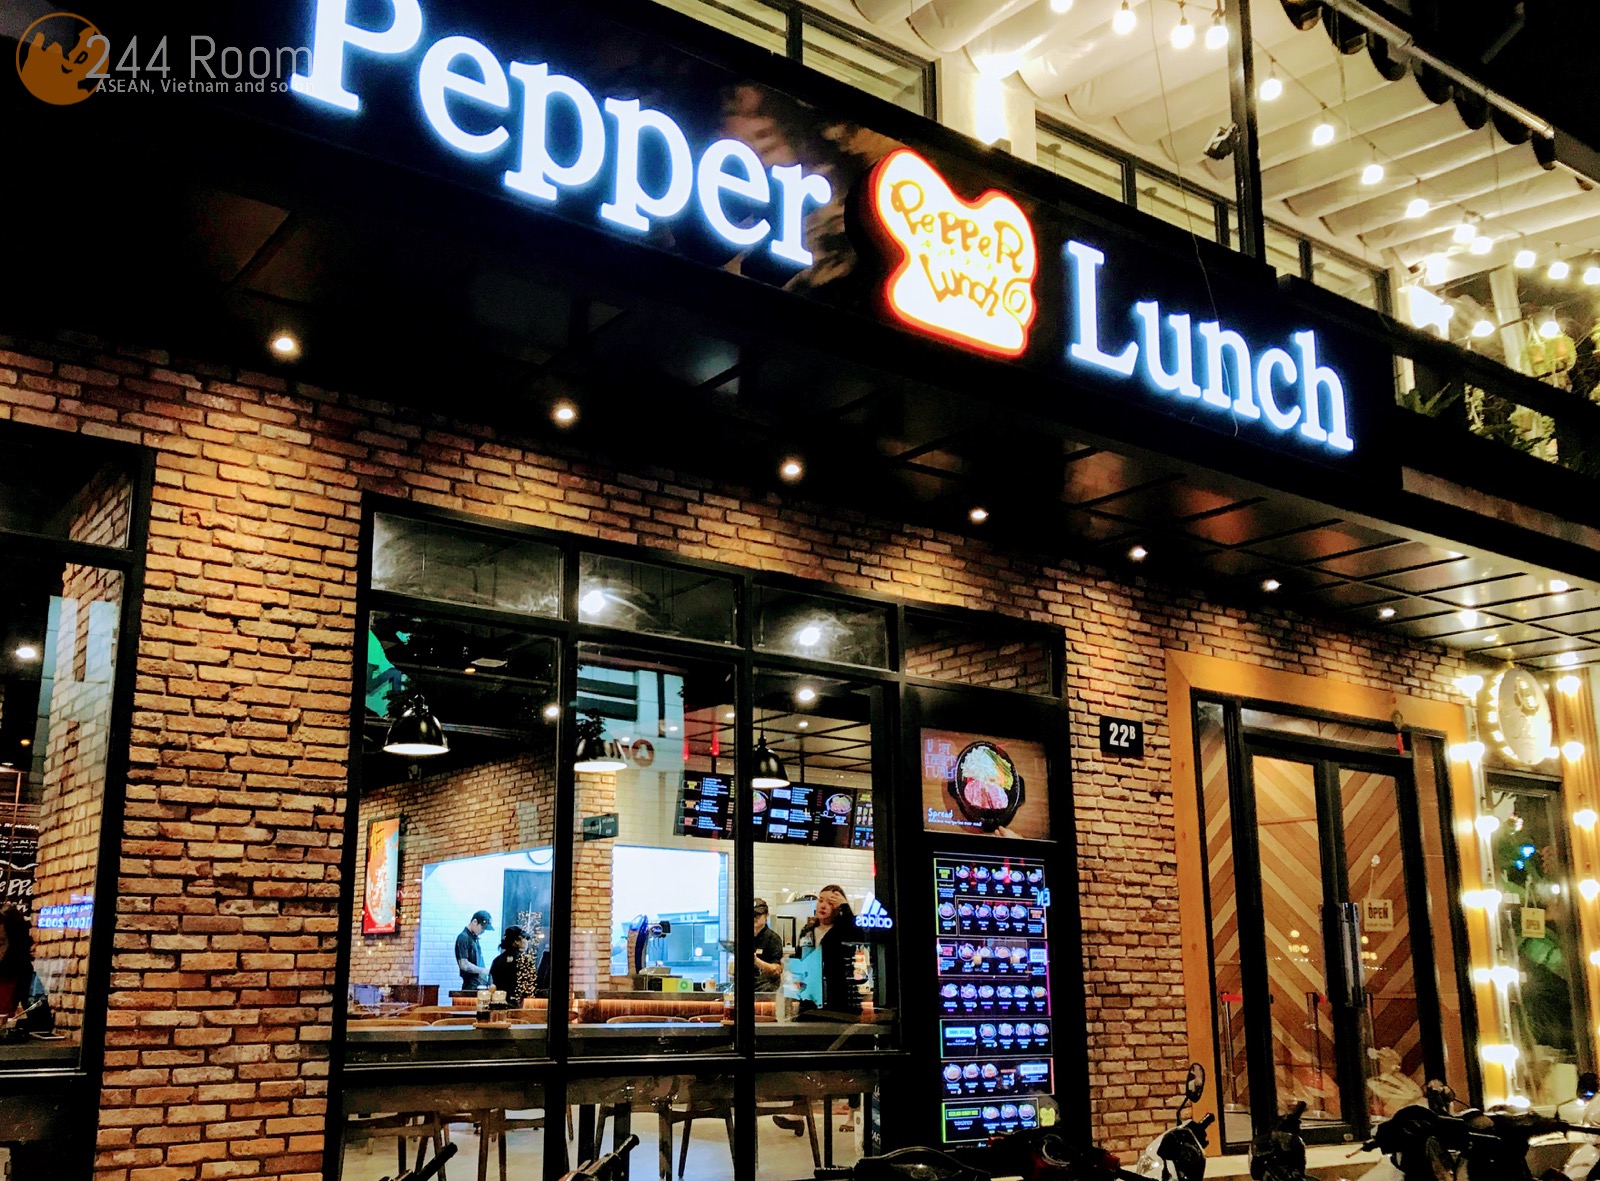 Pepper lunch hanoi ペッパーランチハノイ